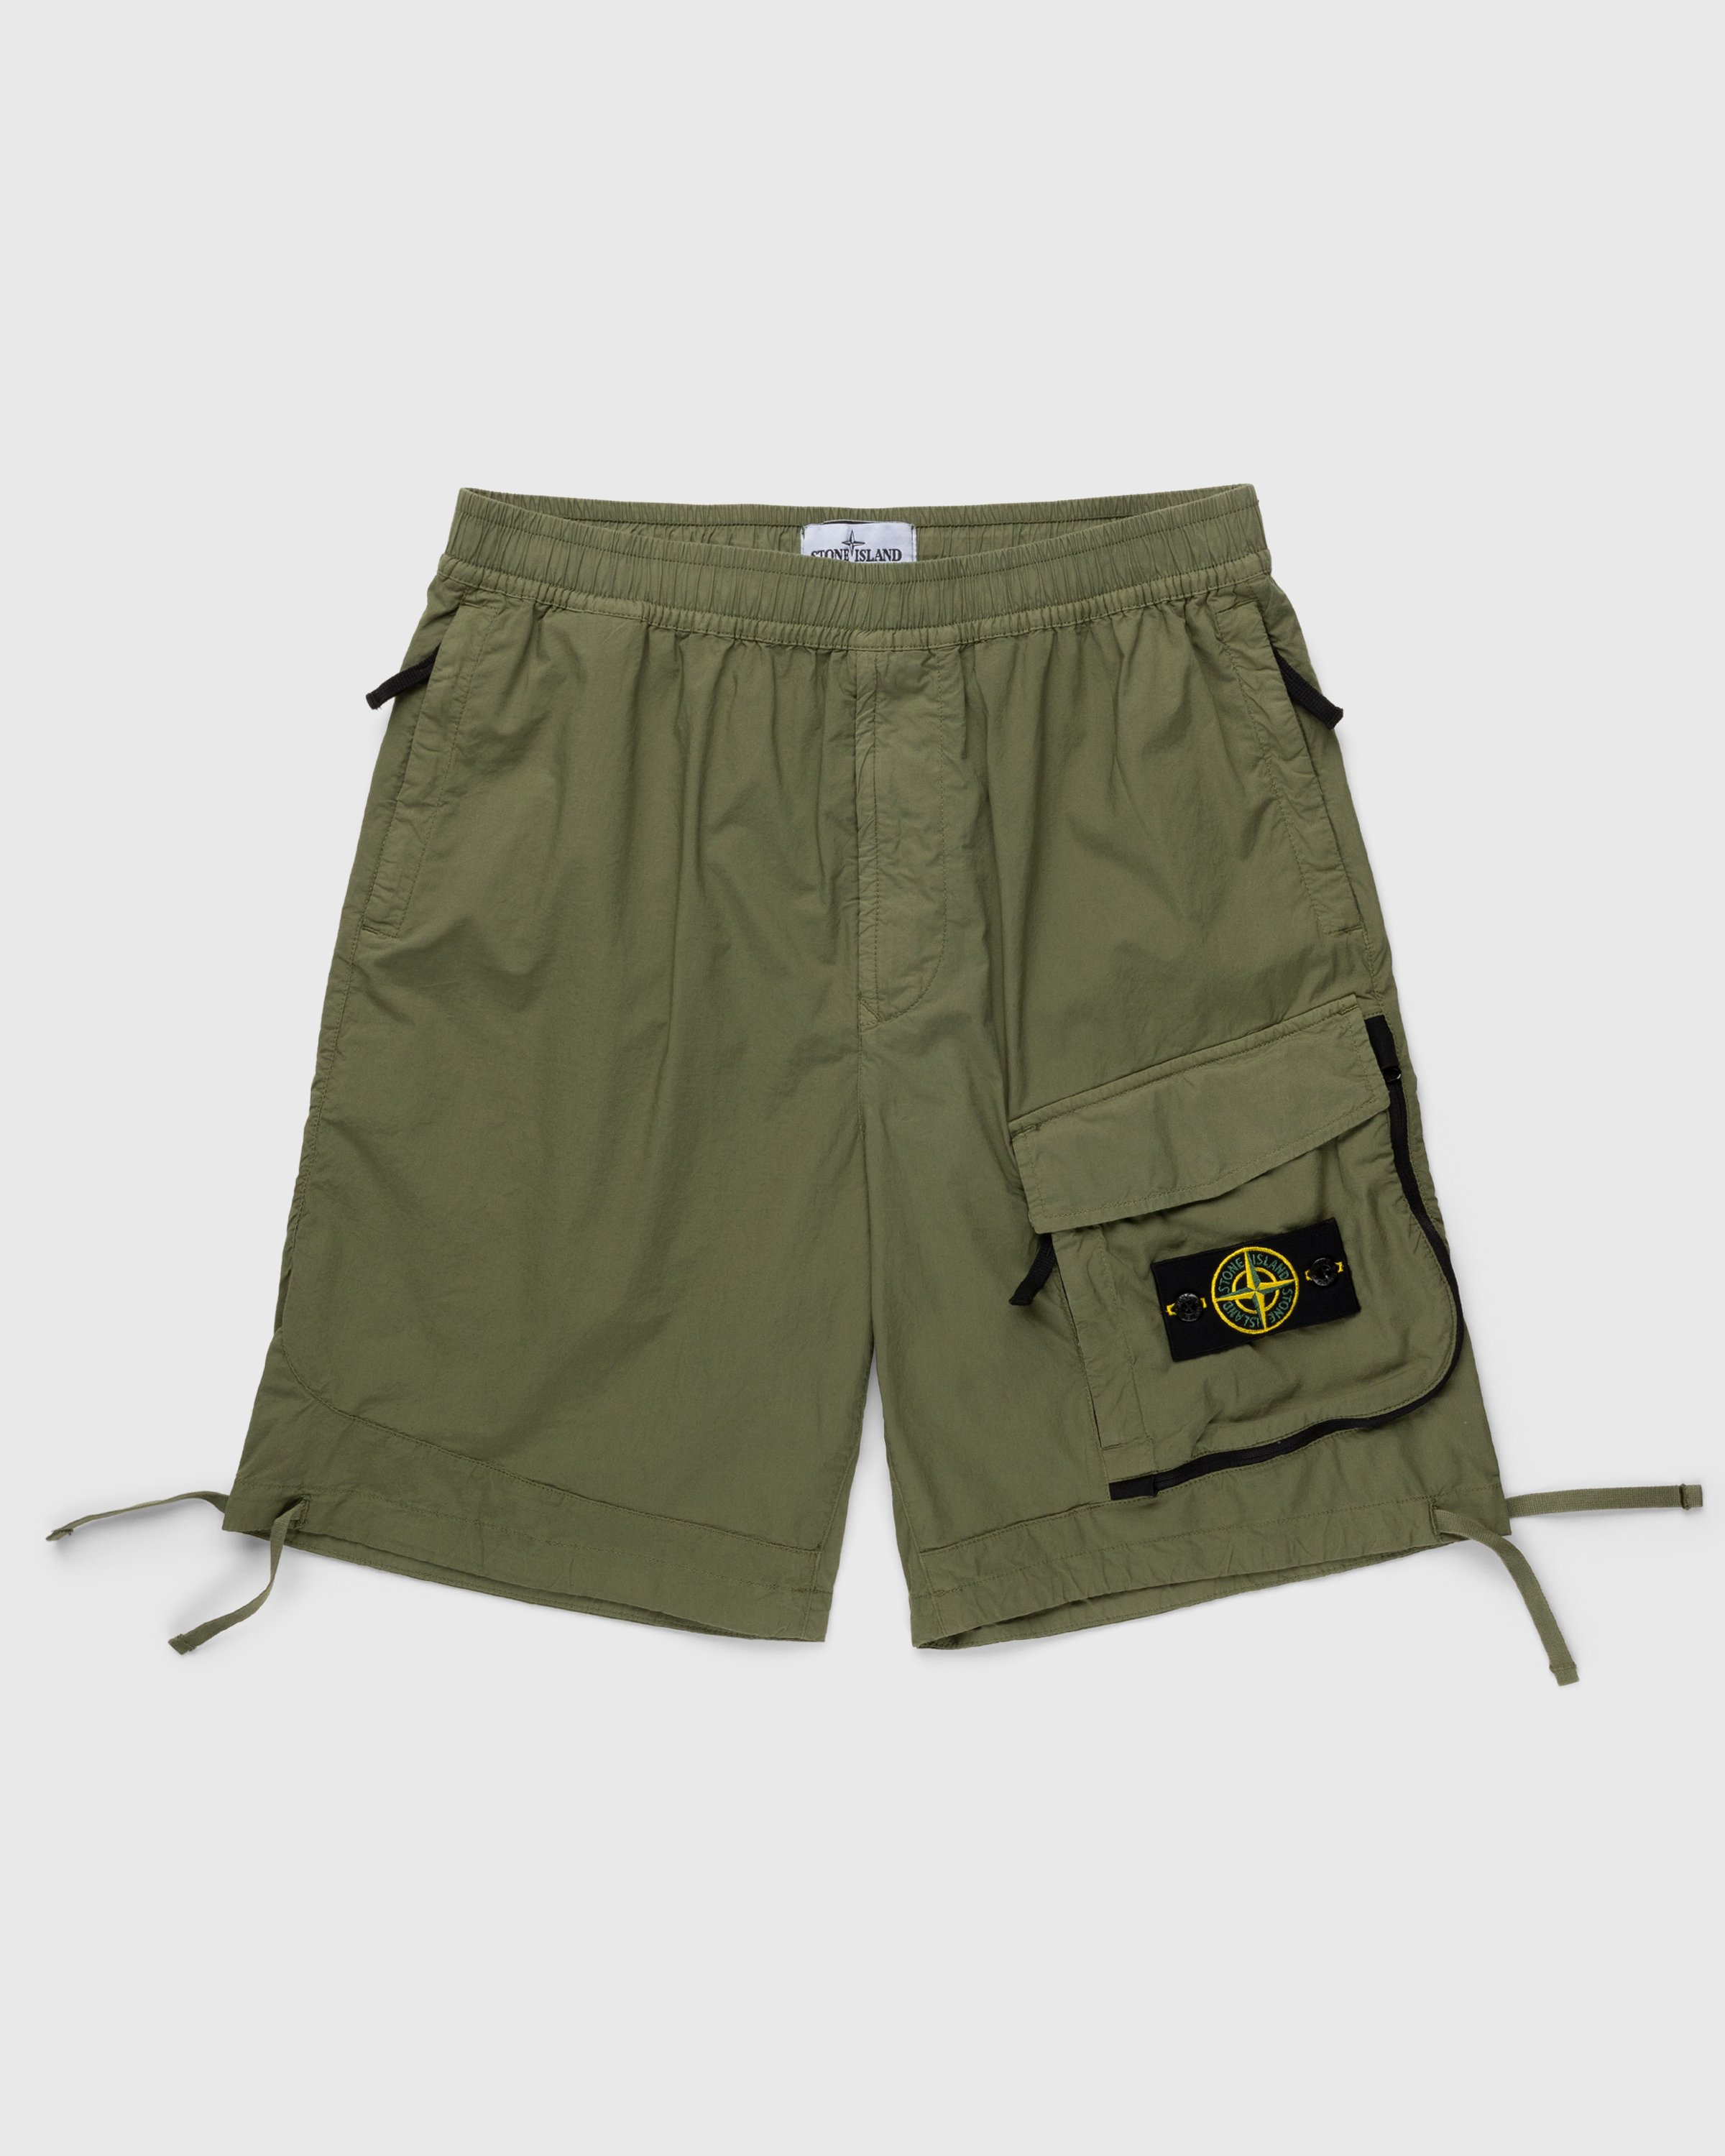 Stone Island - L0703 Bermuda Shorts Olive - Clothing - Green - Image 1